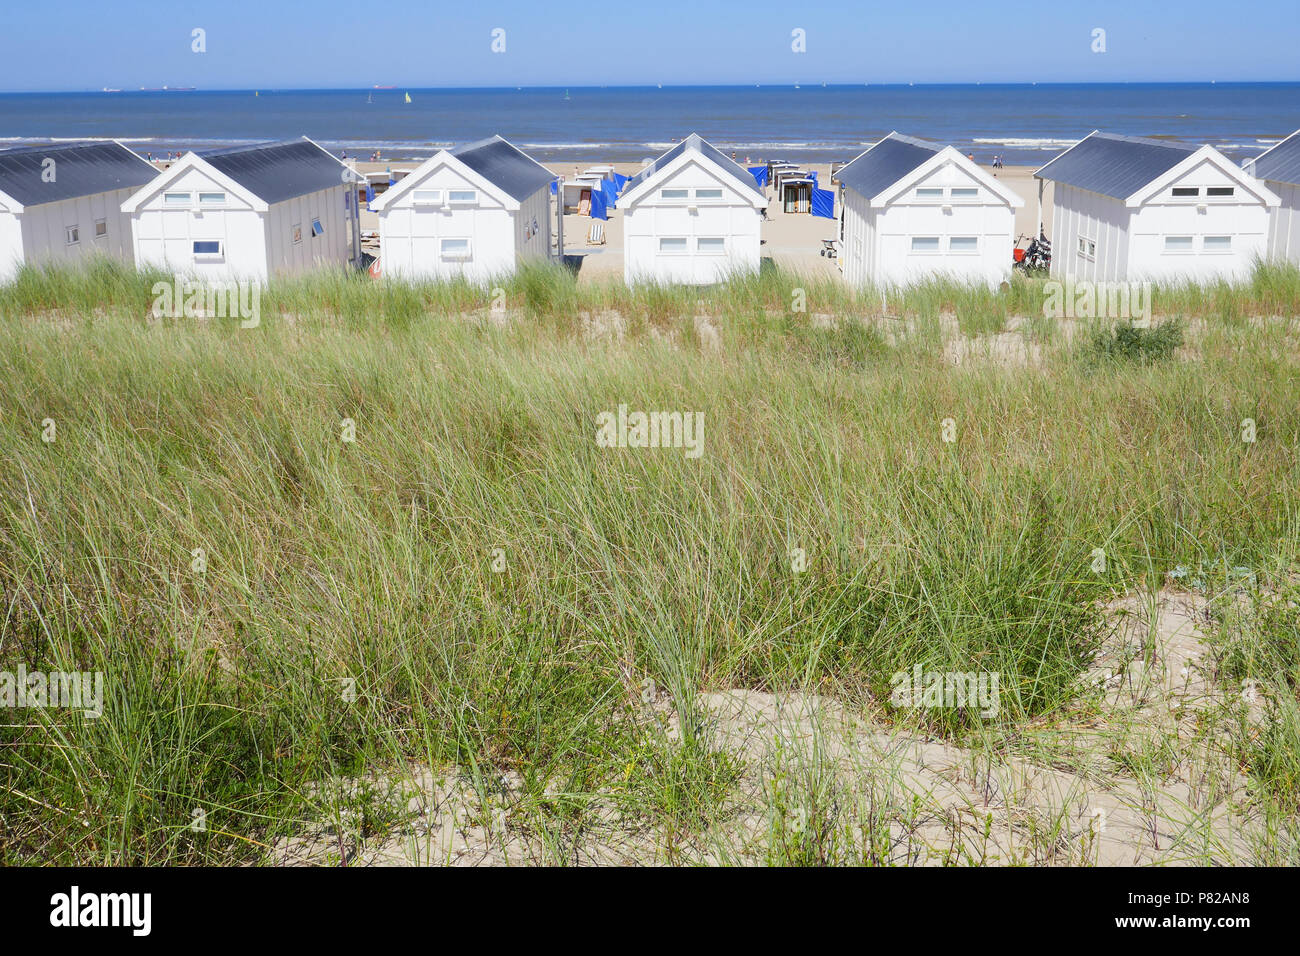 Holz- Strand Häuser am Strand von Katwijk aan Zee, Holland Stockfoto